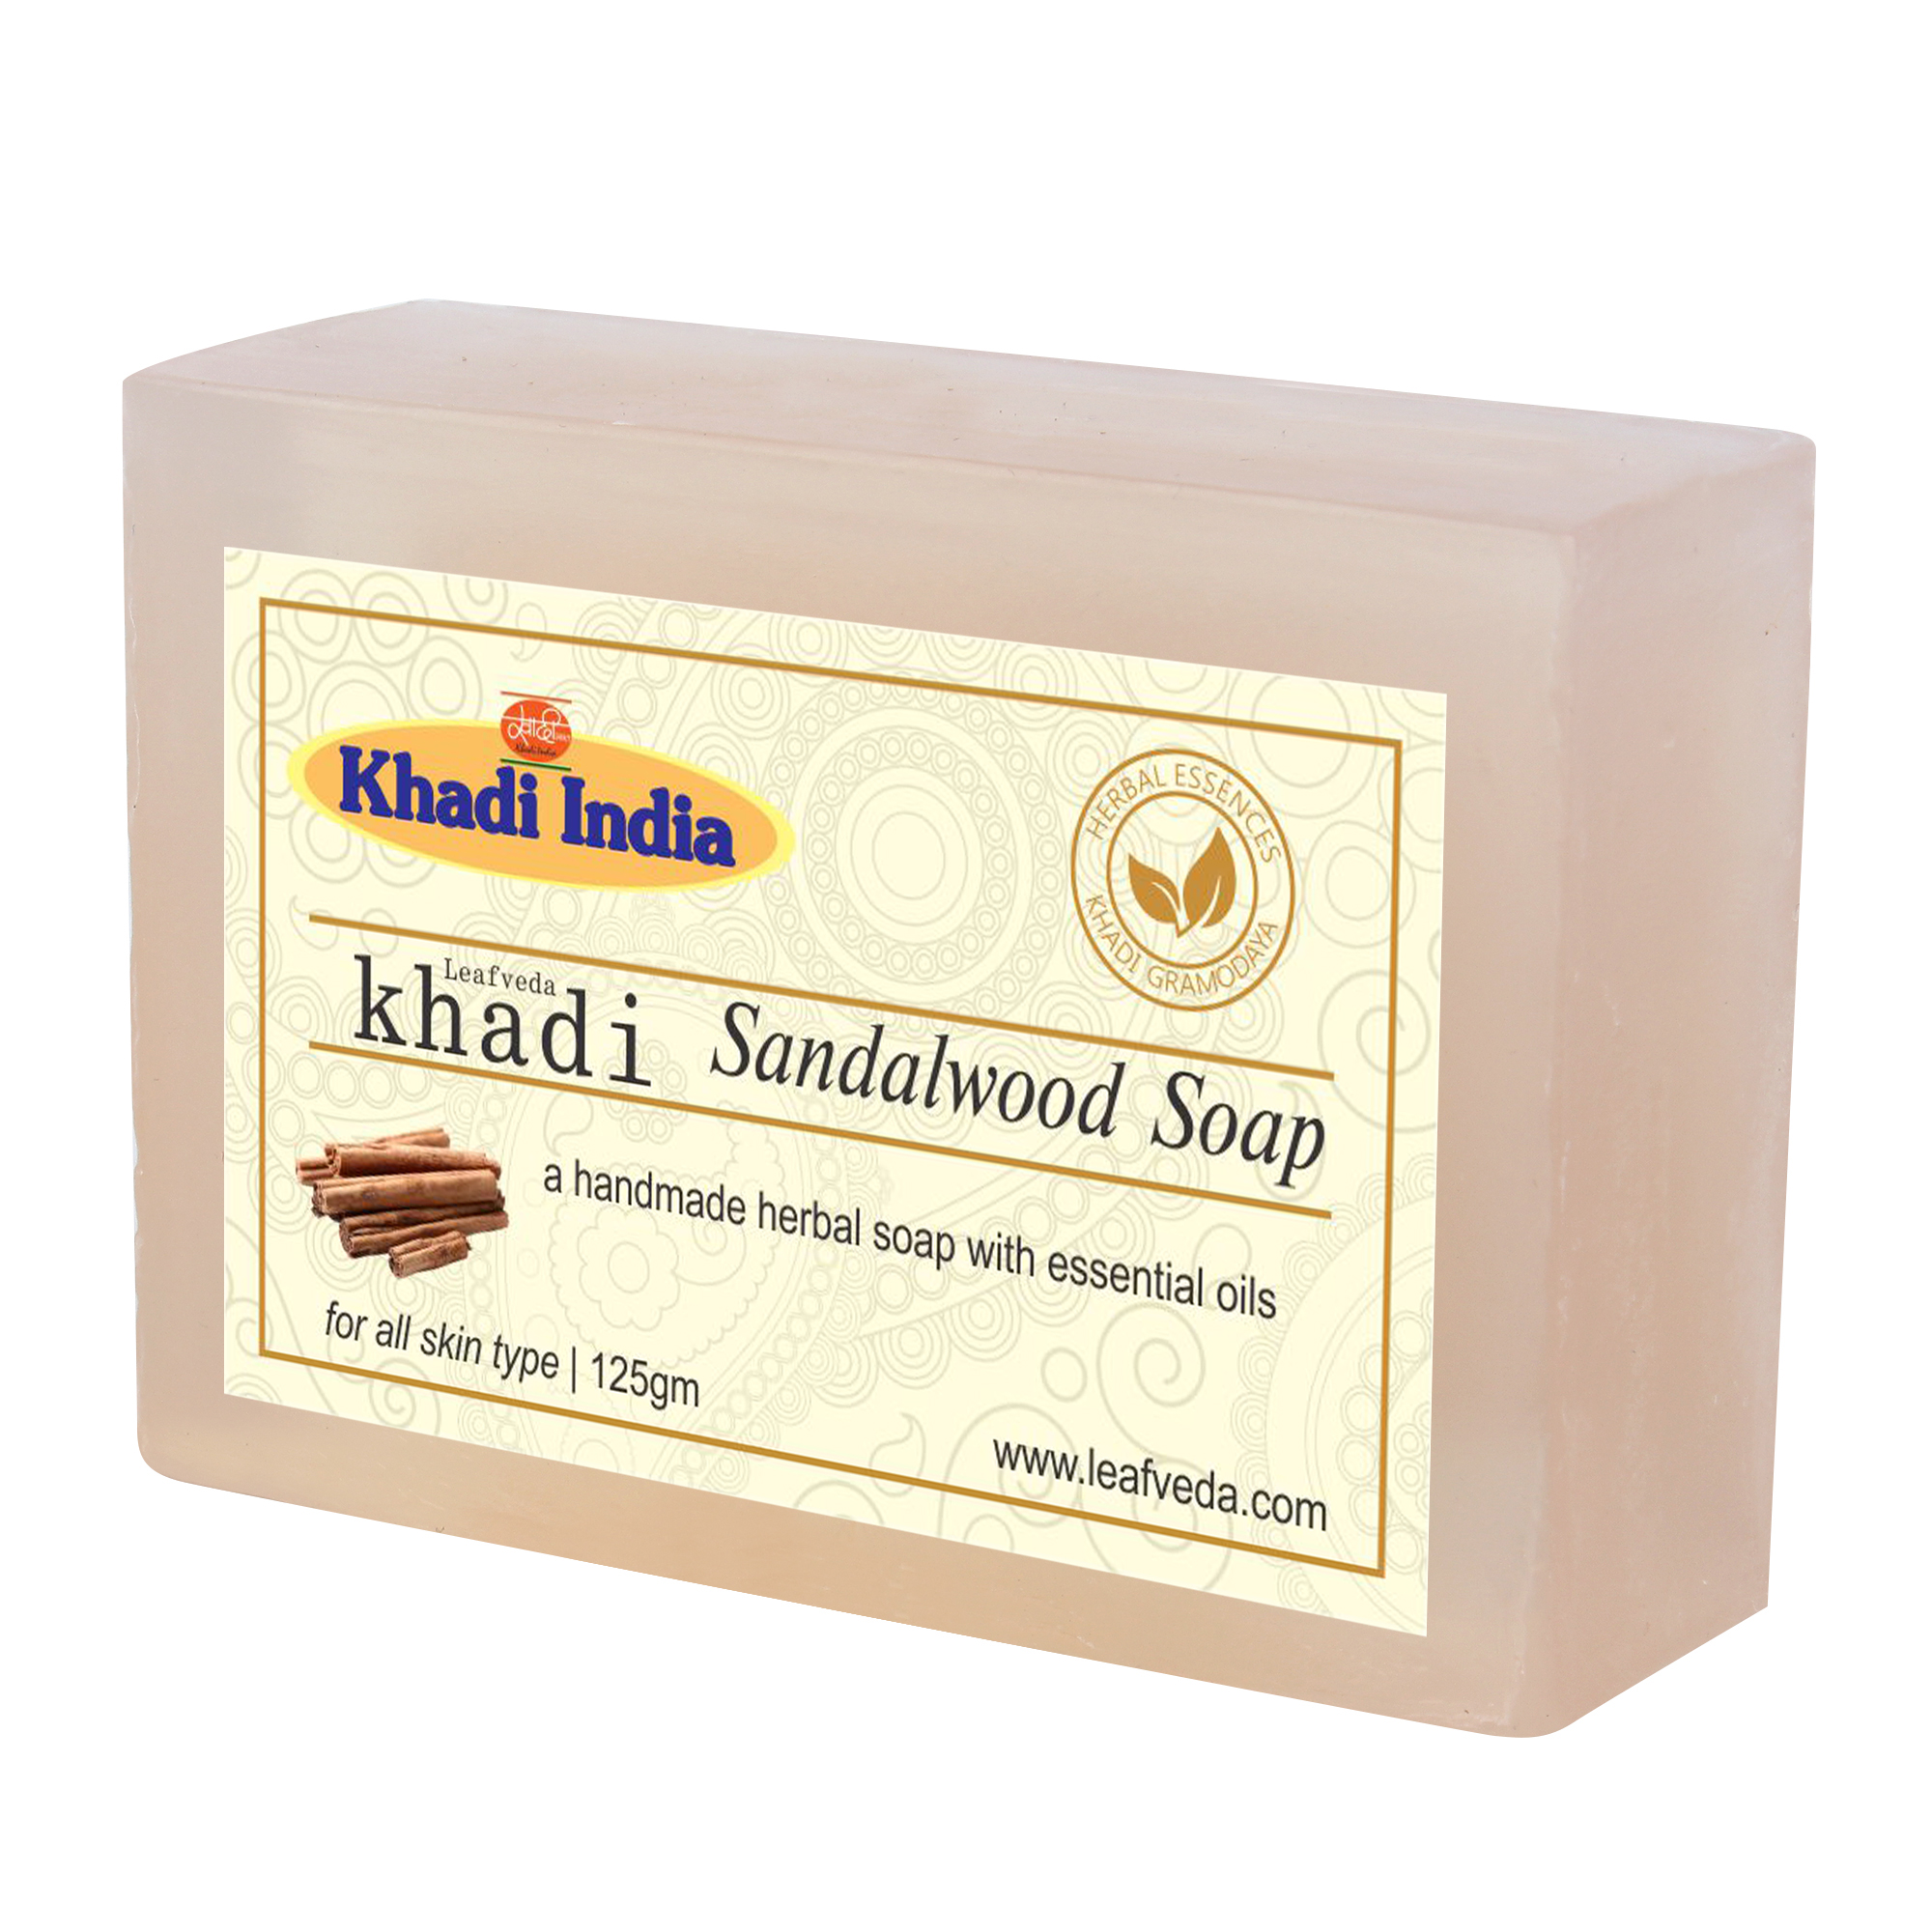 Buy Khadi Leafveda Sandalwood Soap at Best Price Online